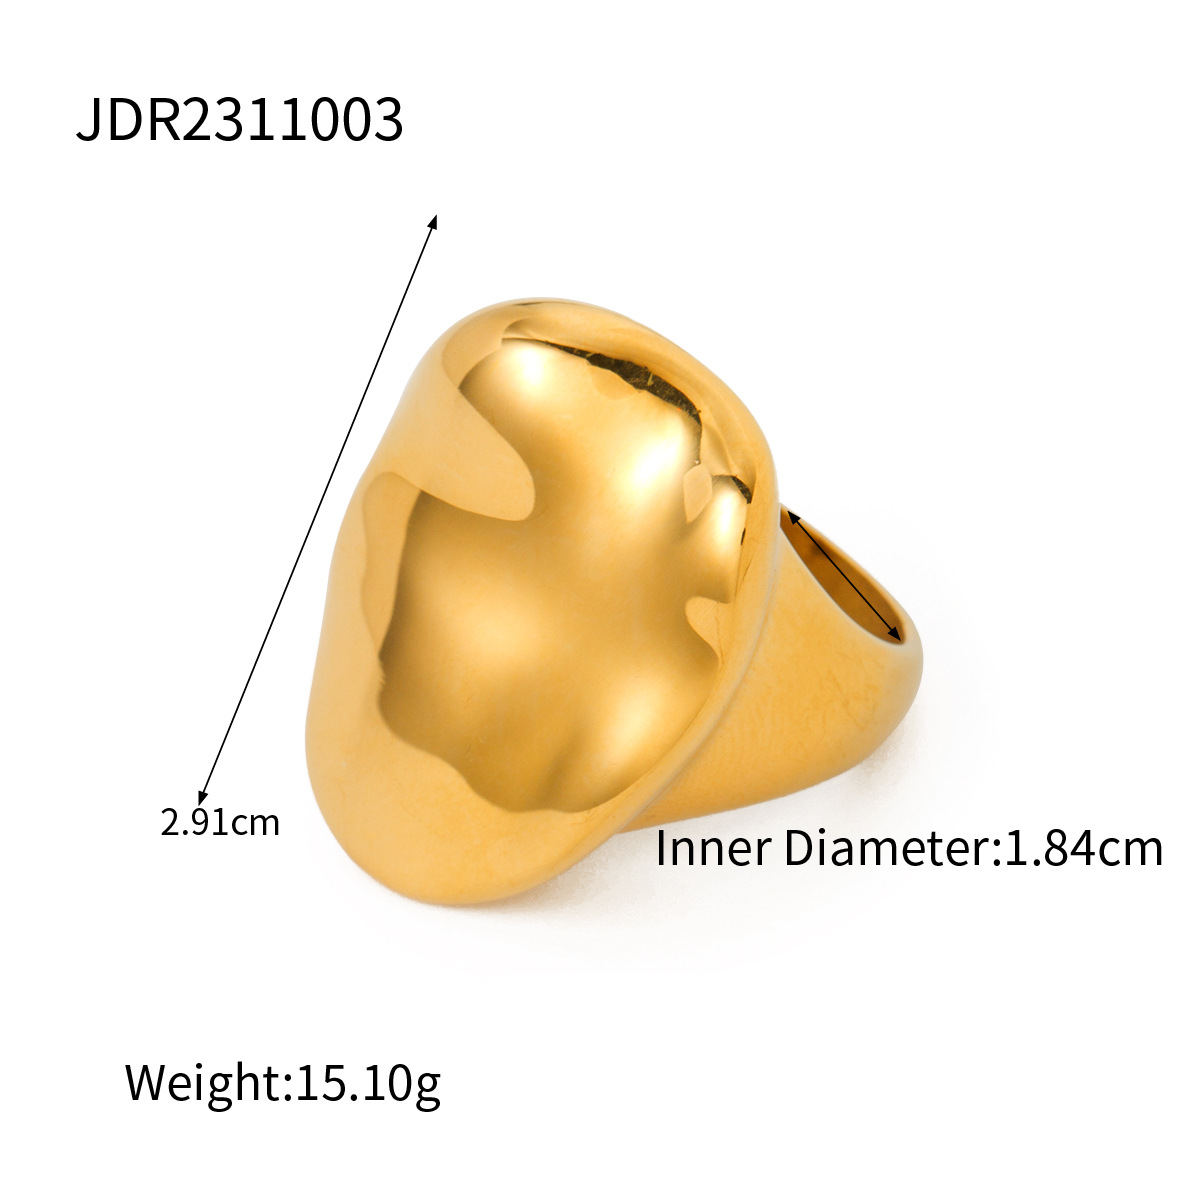 JDR2311003 US Size #6